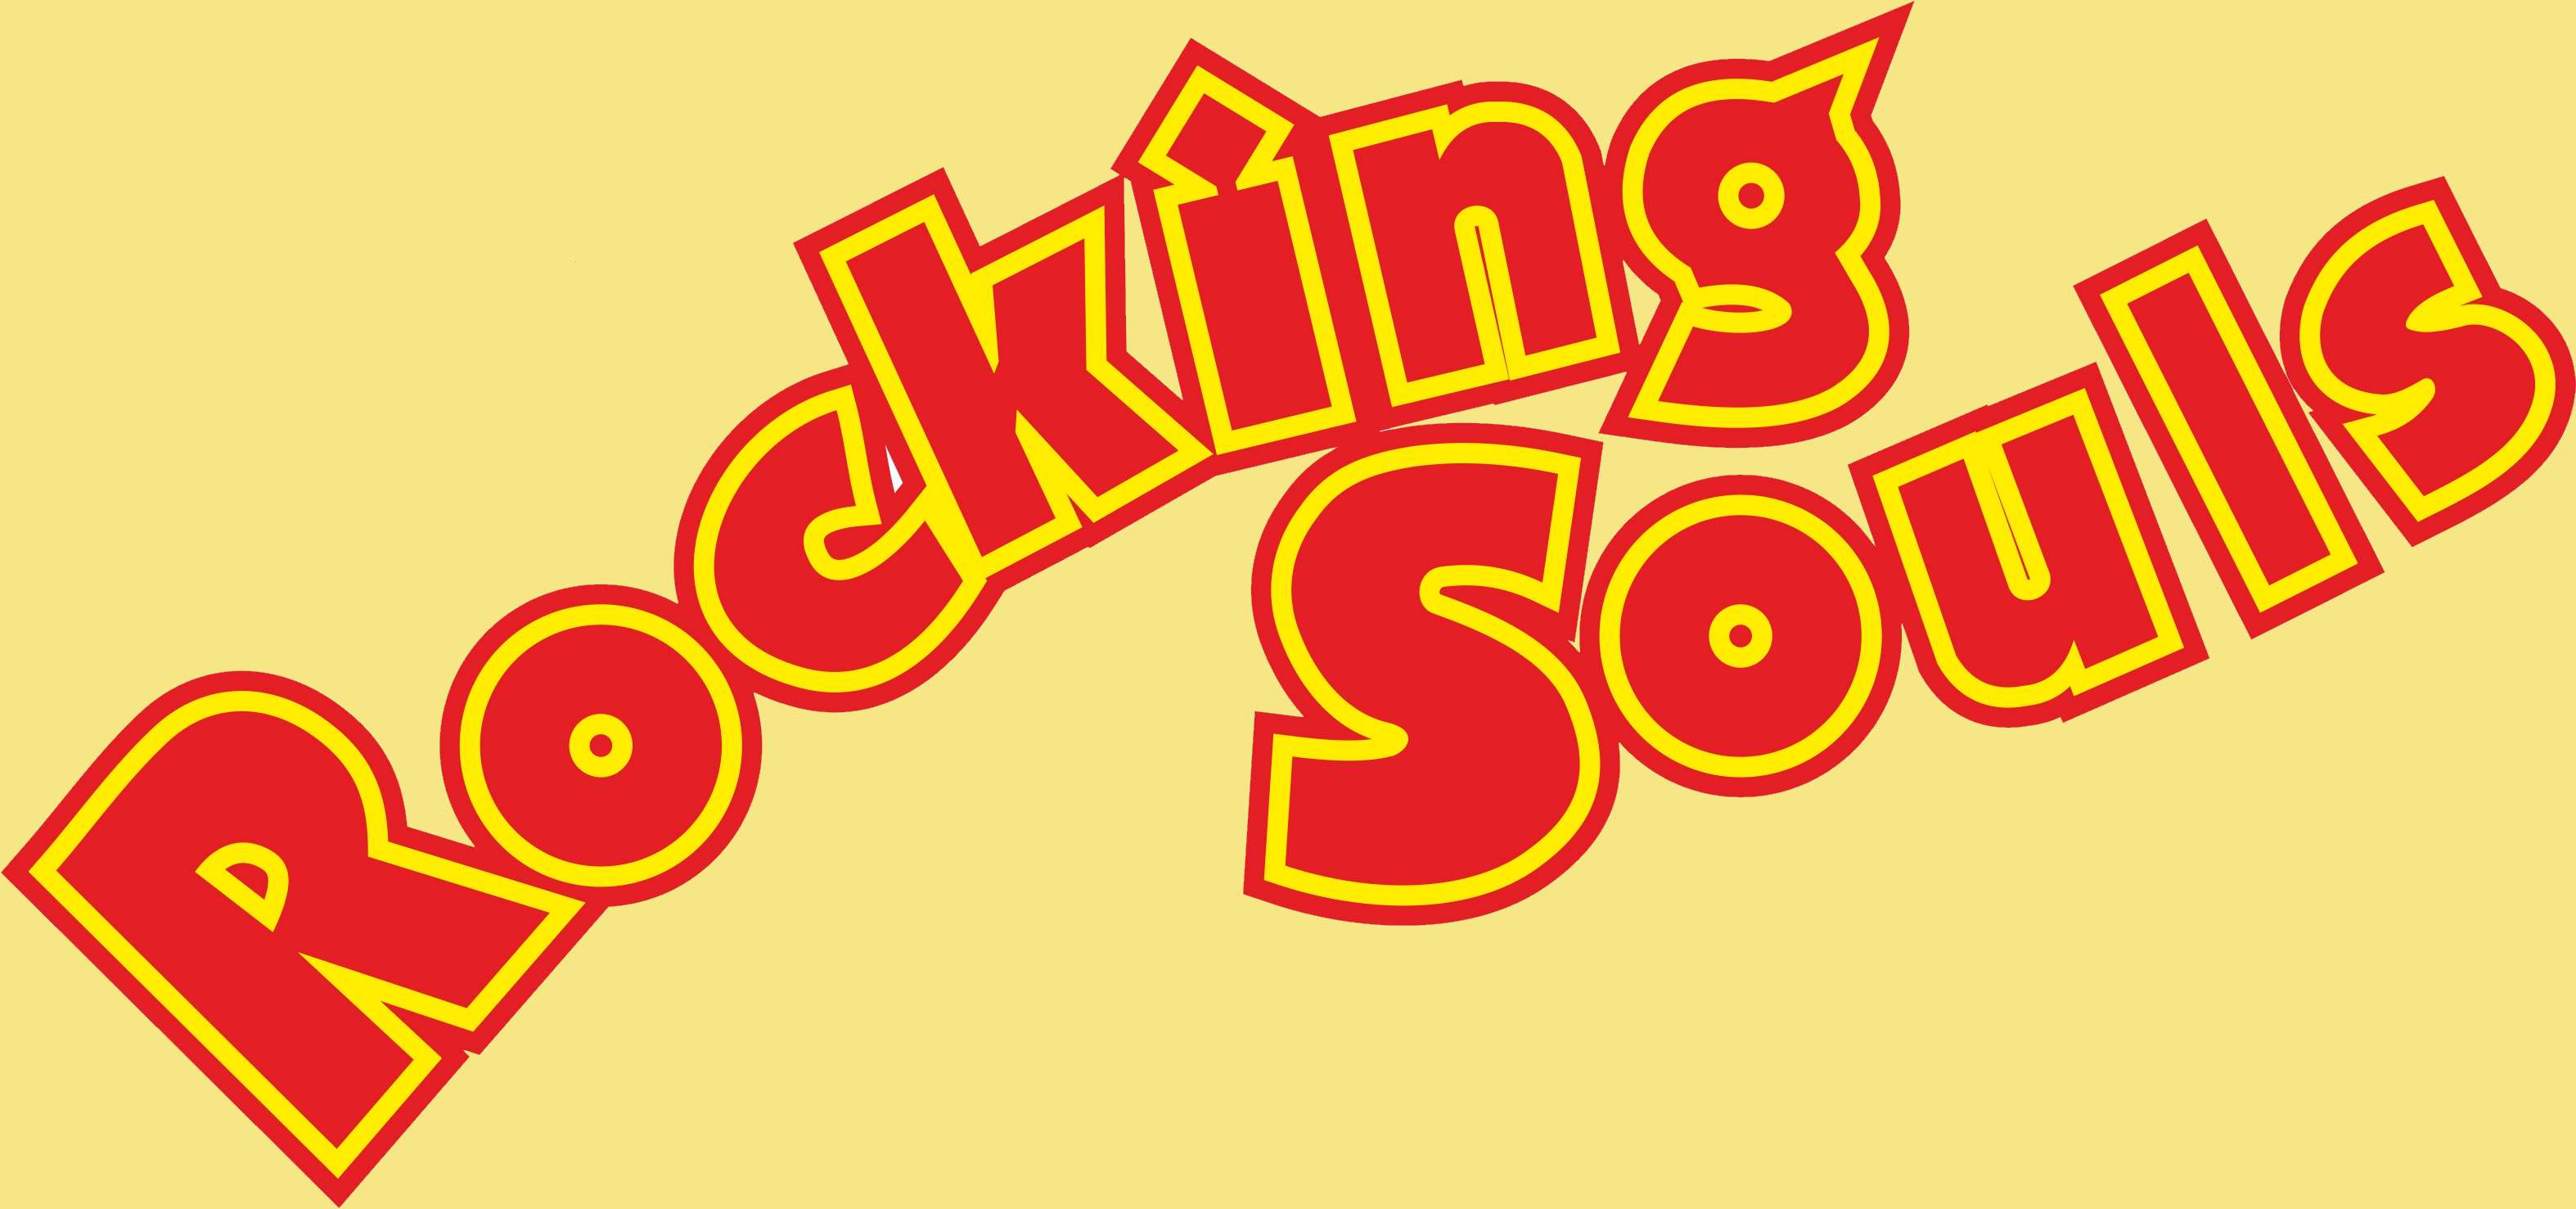 Rocking_Souls_Logo gelb